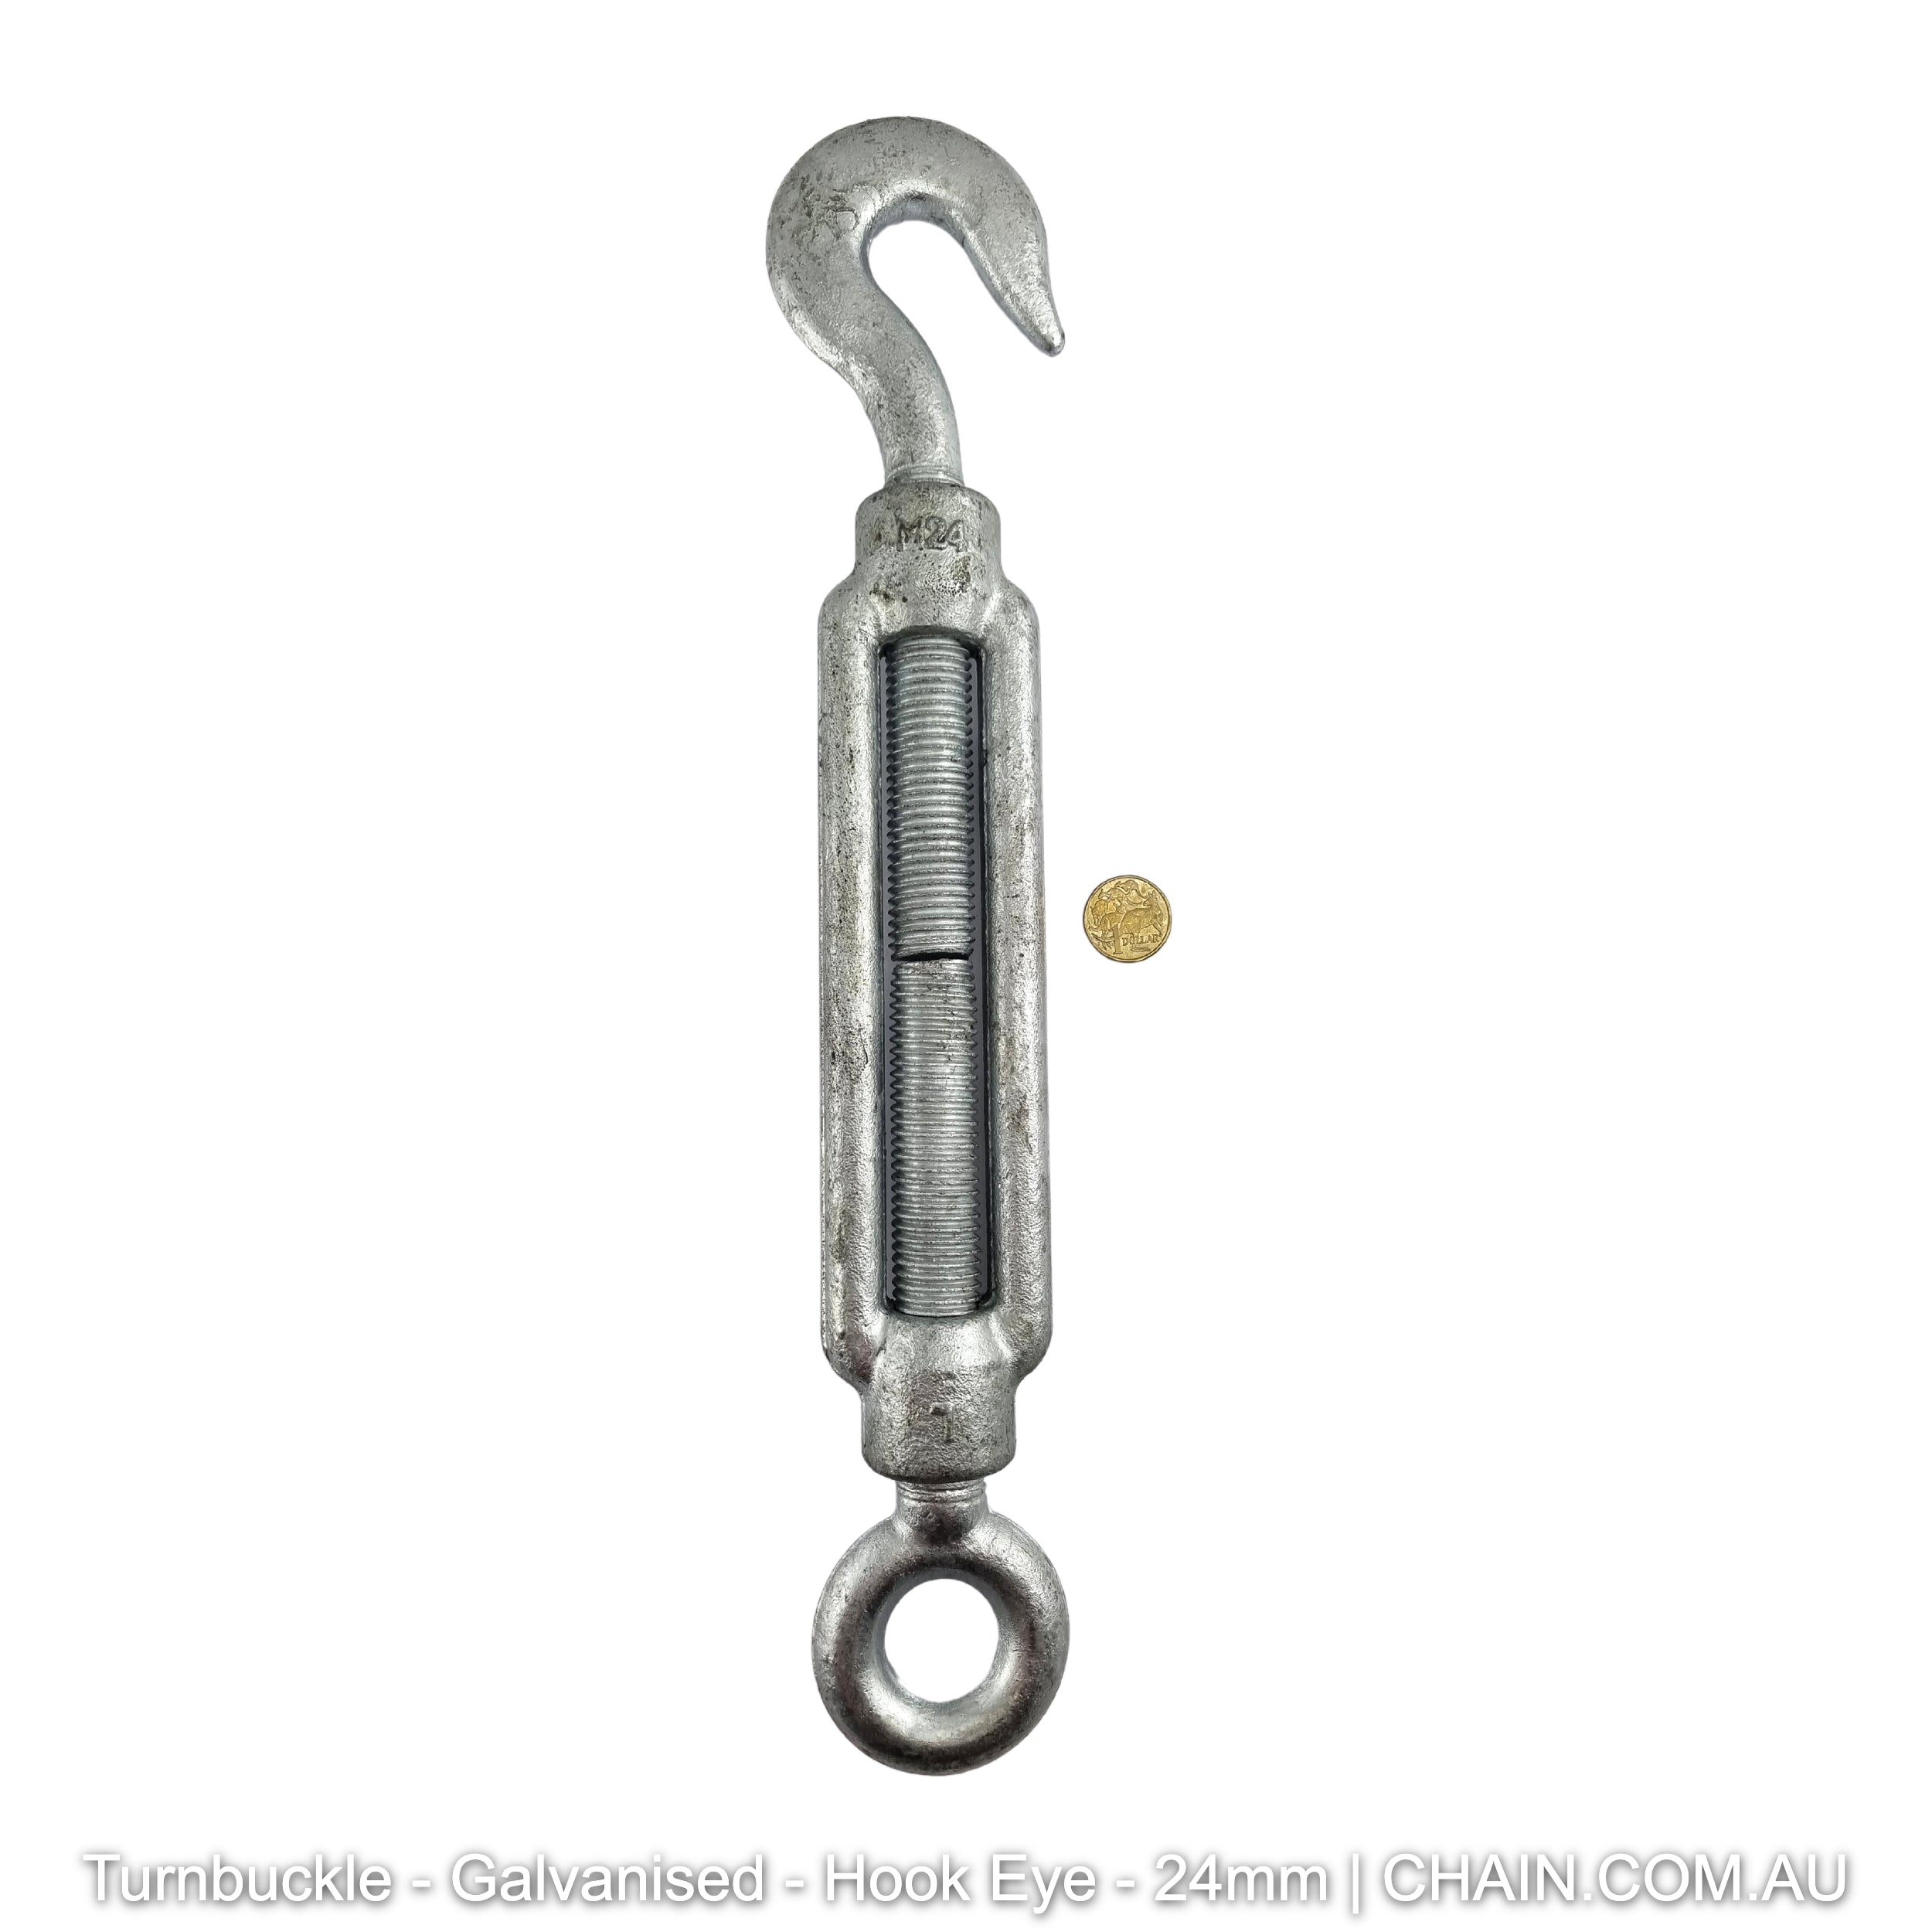 Turnbuckles - Galvanised - Hook-Eye - 24mm. Australia